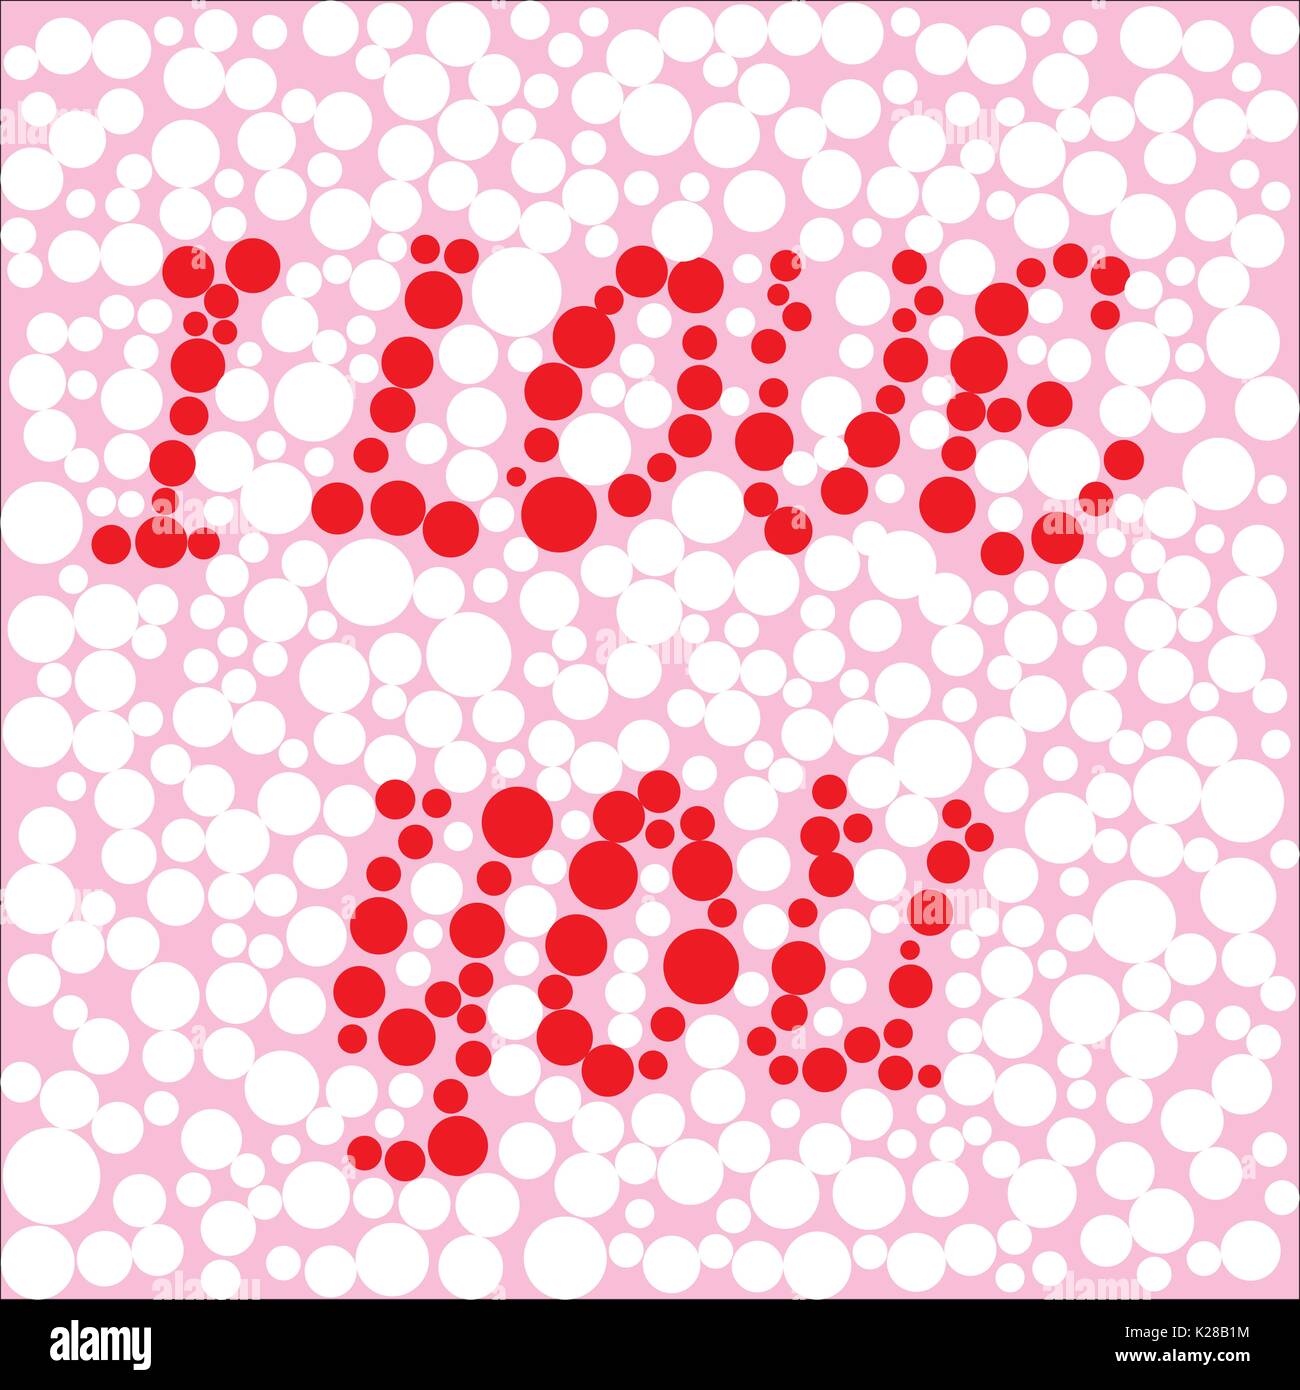 Hintergrund der Kreise in verschiedenen Größen mit der Aufschrift "Ich liebe Dich", Vector Illustration Stock Vektor